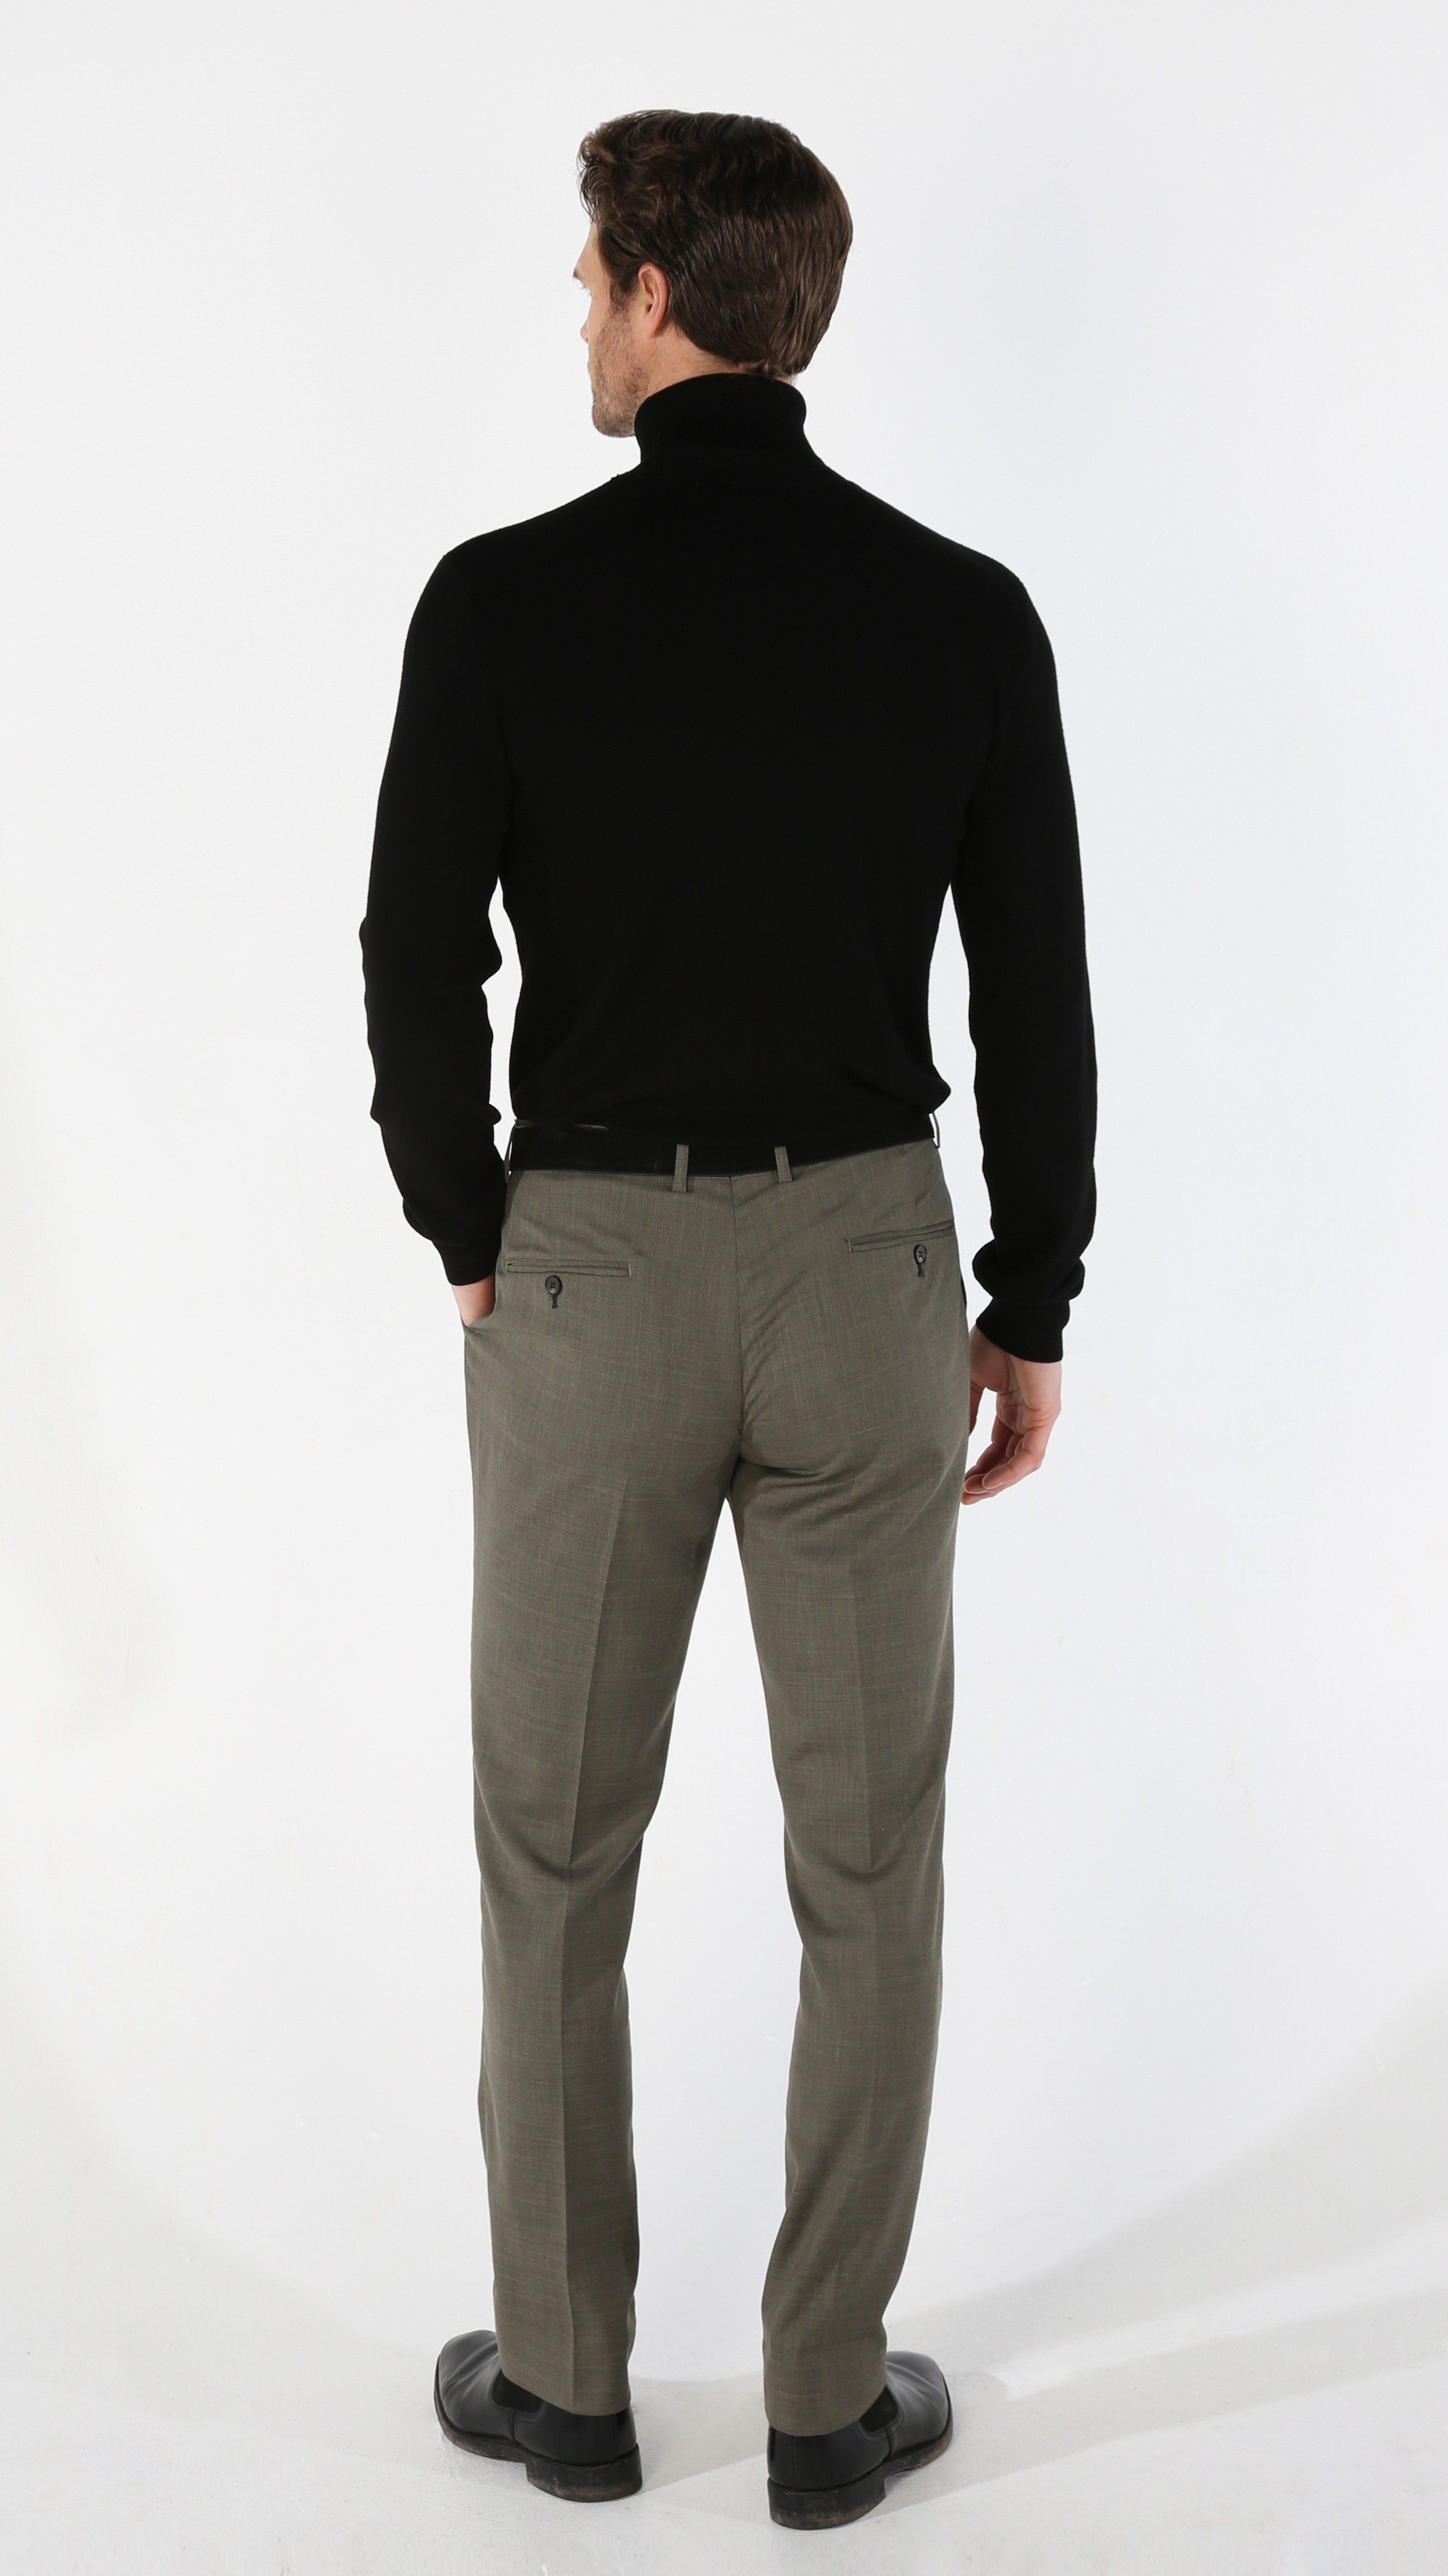 Men's Tailored Fit Plaid Suit Trousers - KURT - Sage Green